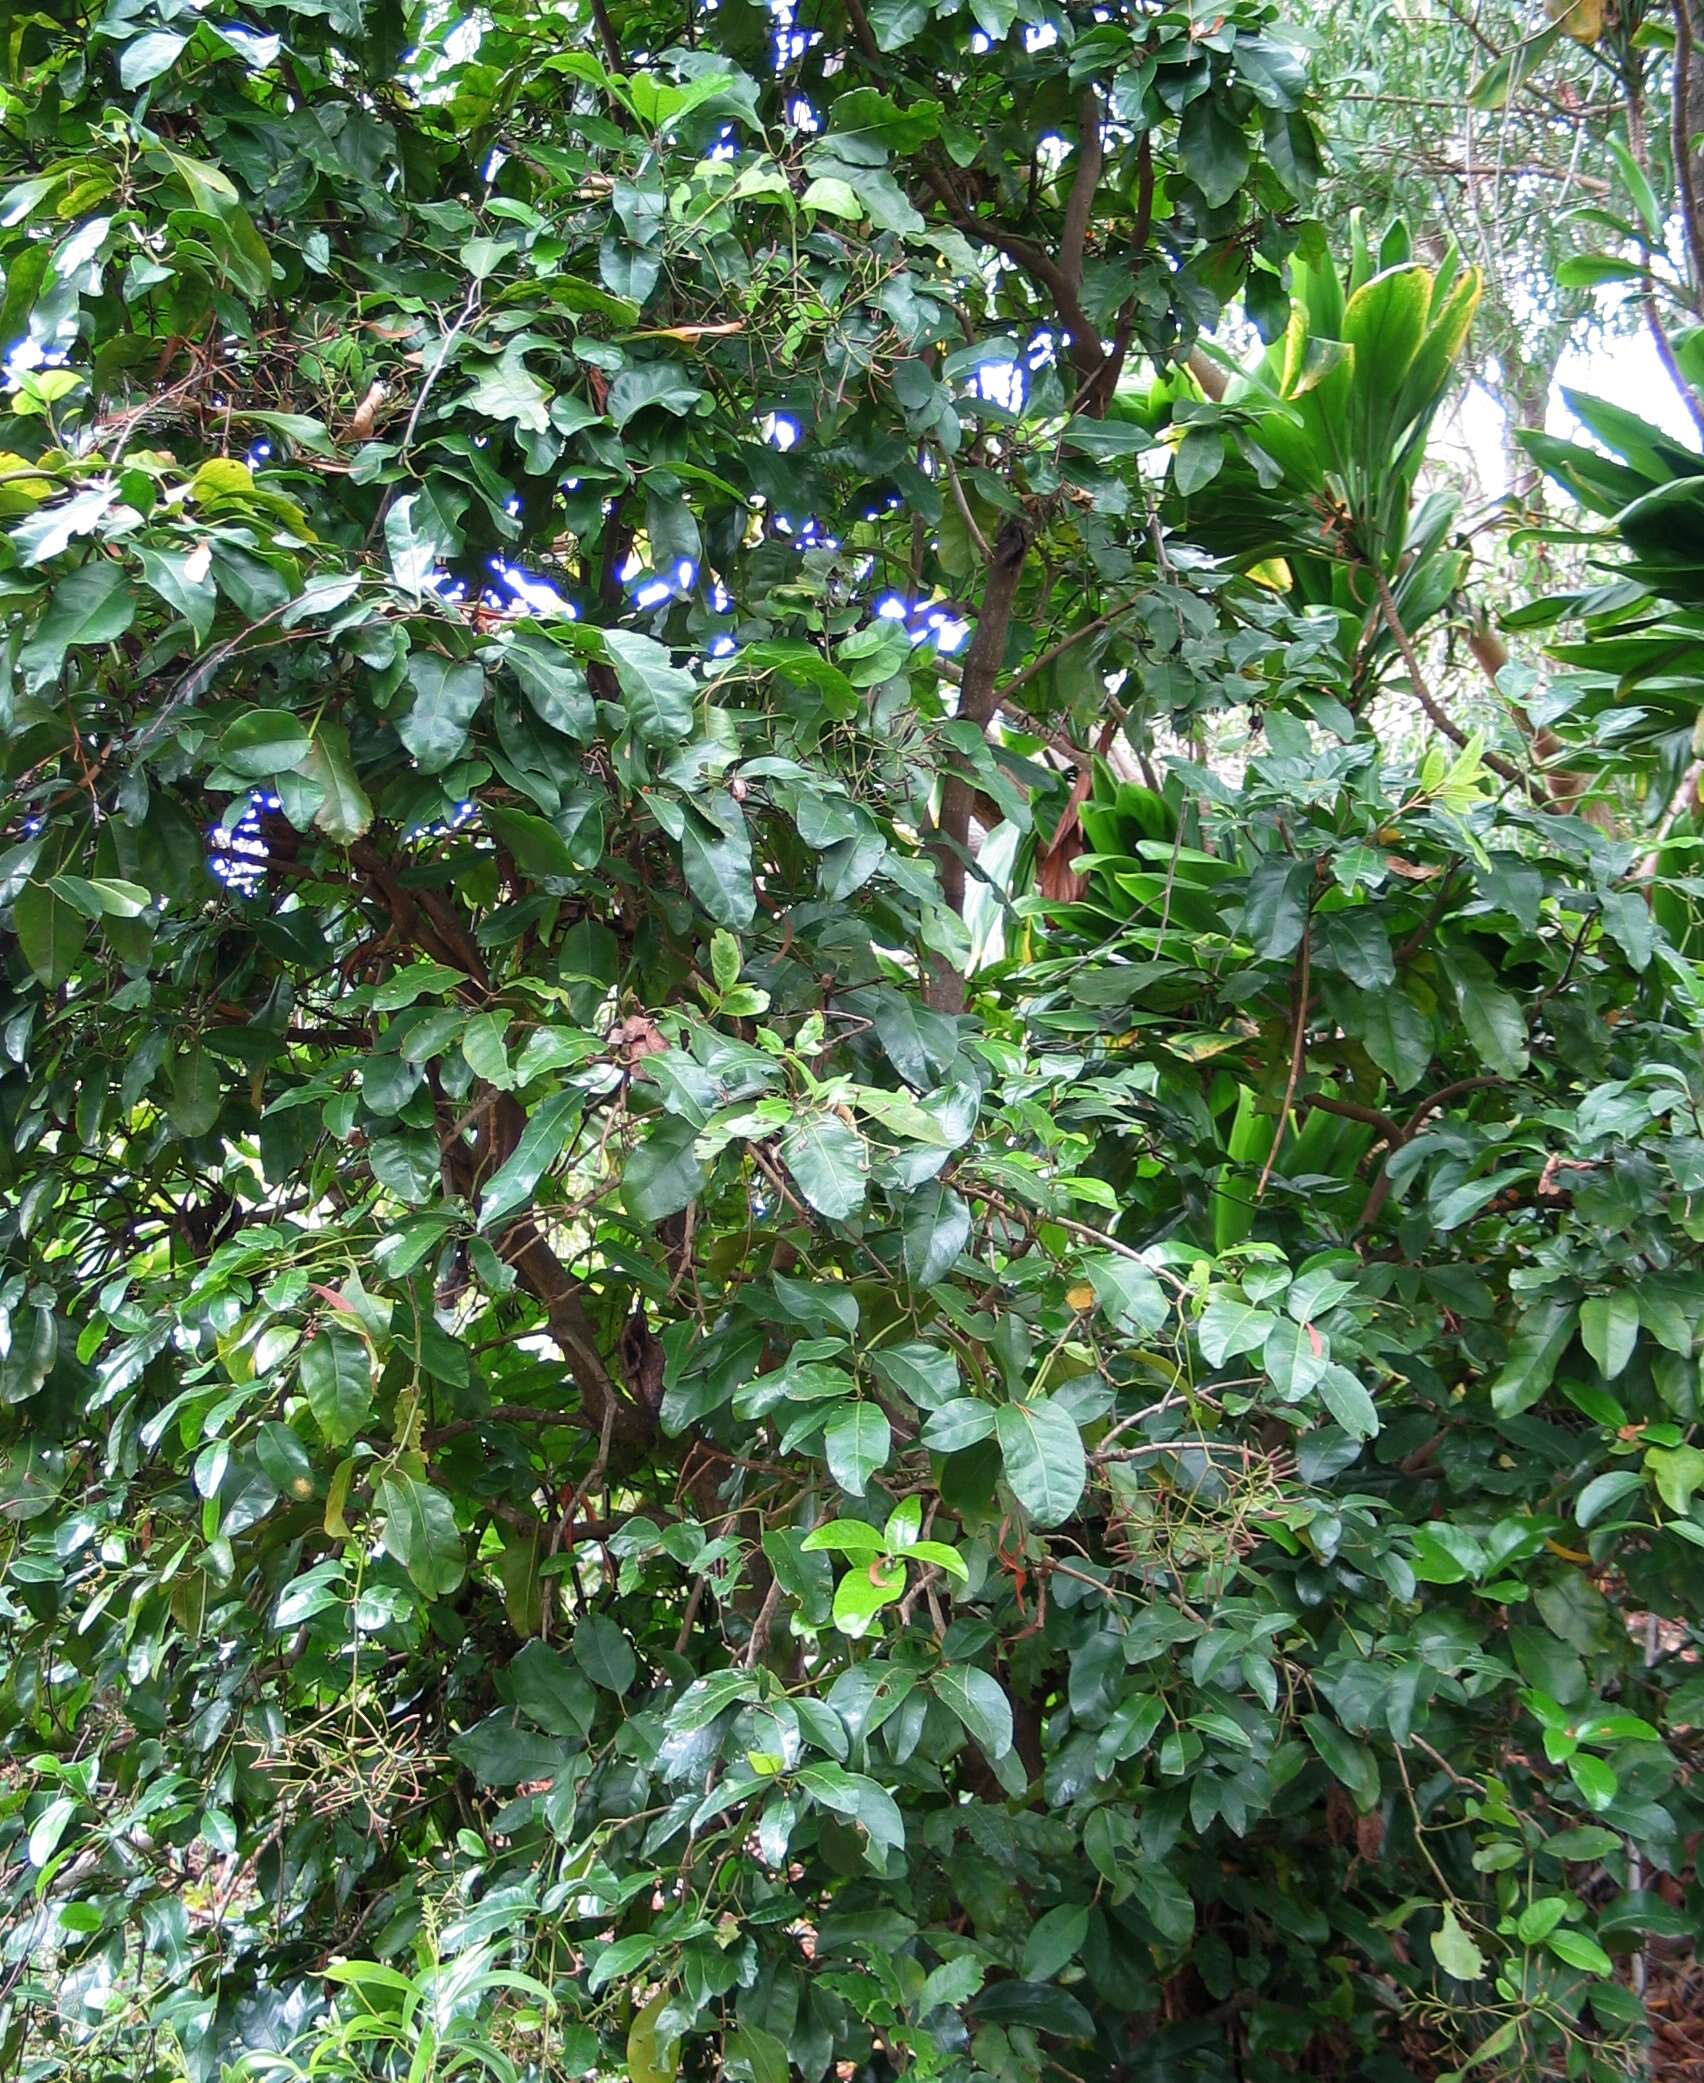 Image of Catchbirdtrees